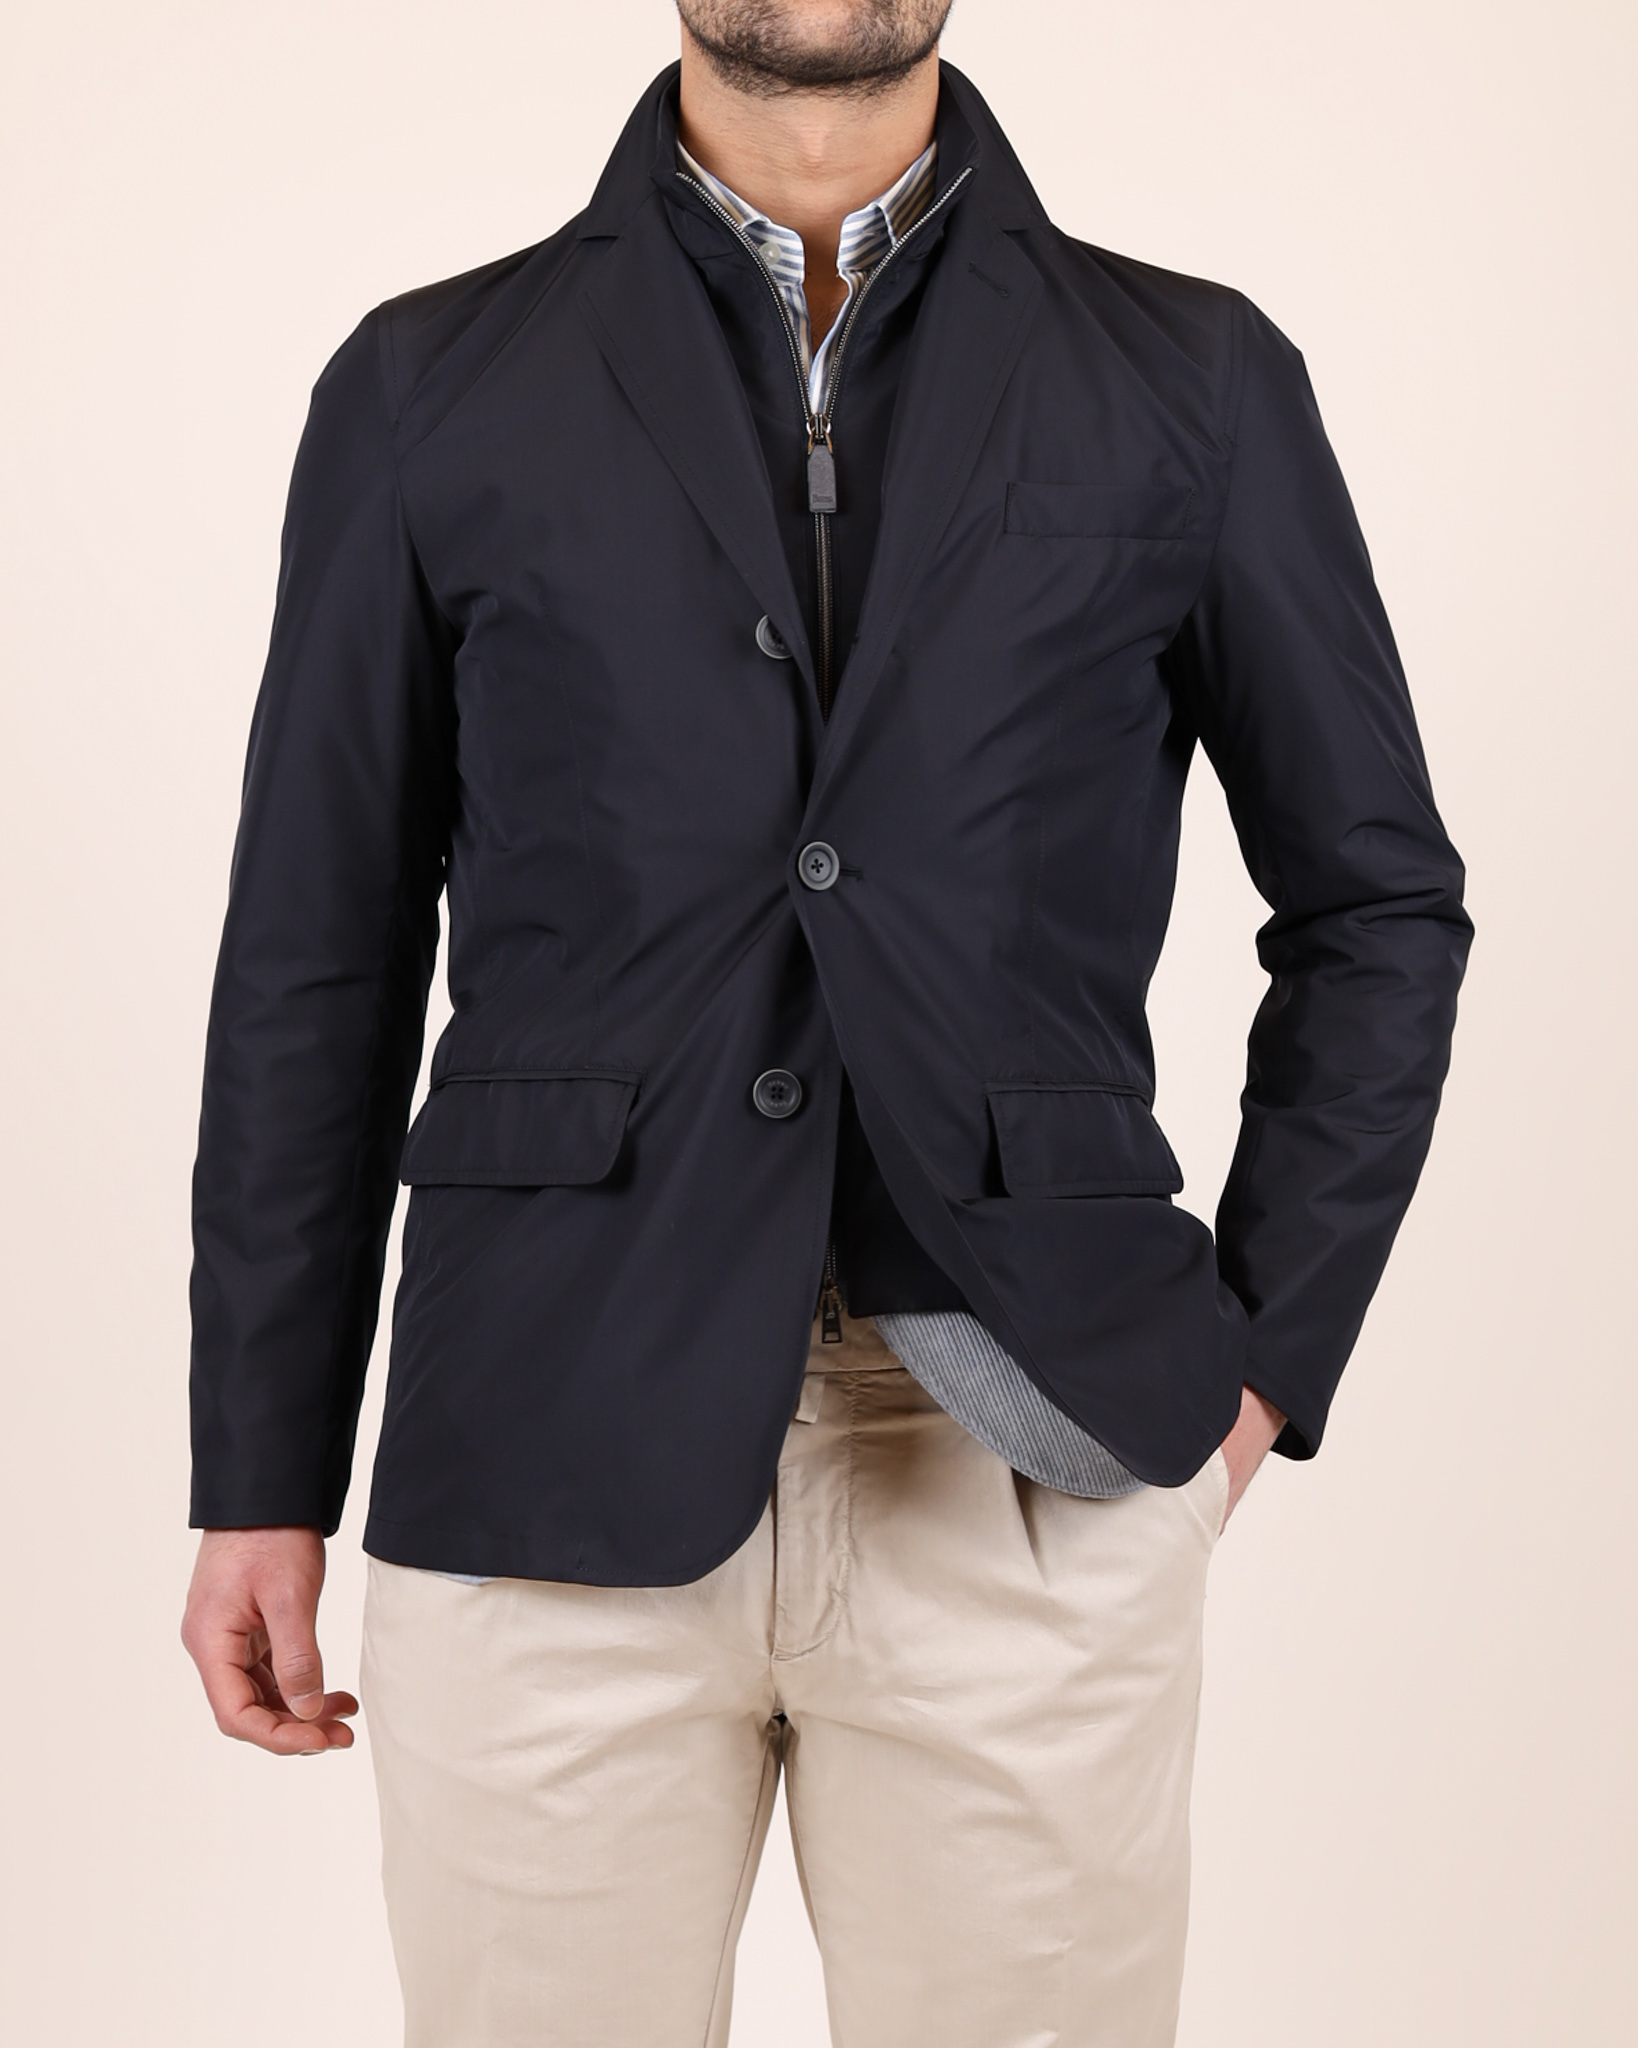 zgander_herno_byron_blazer_jacket_navy-1